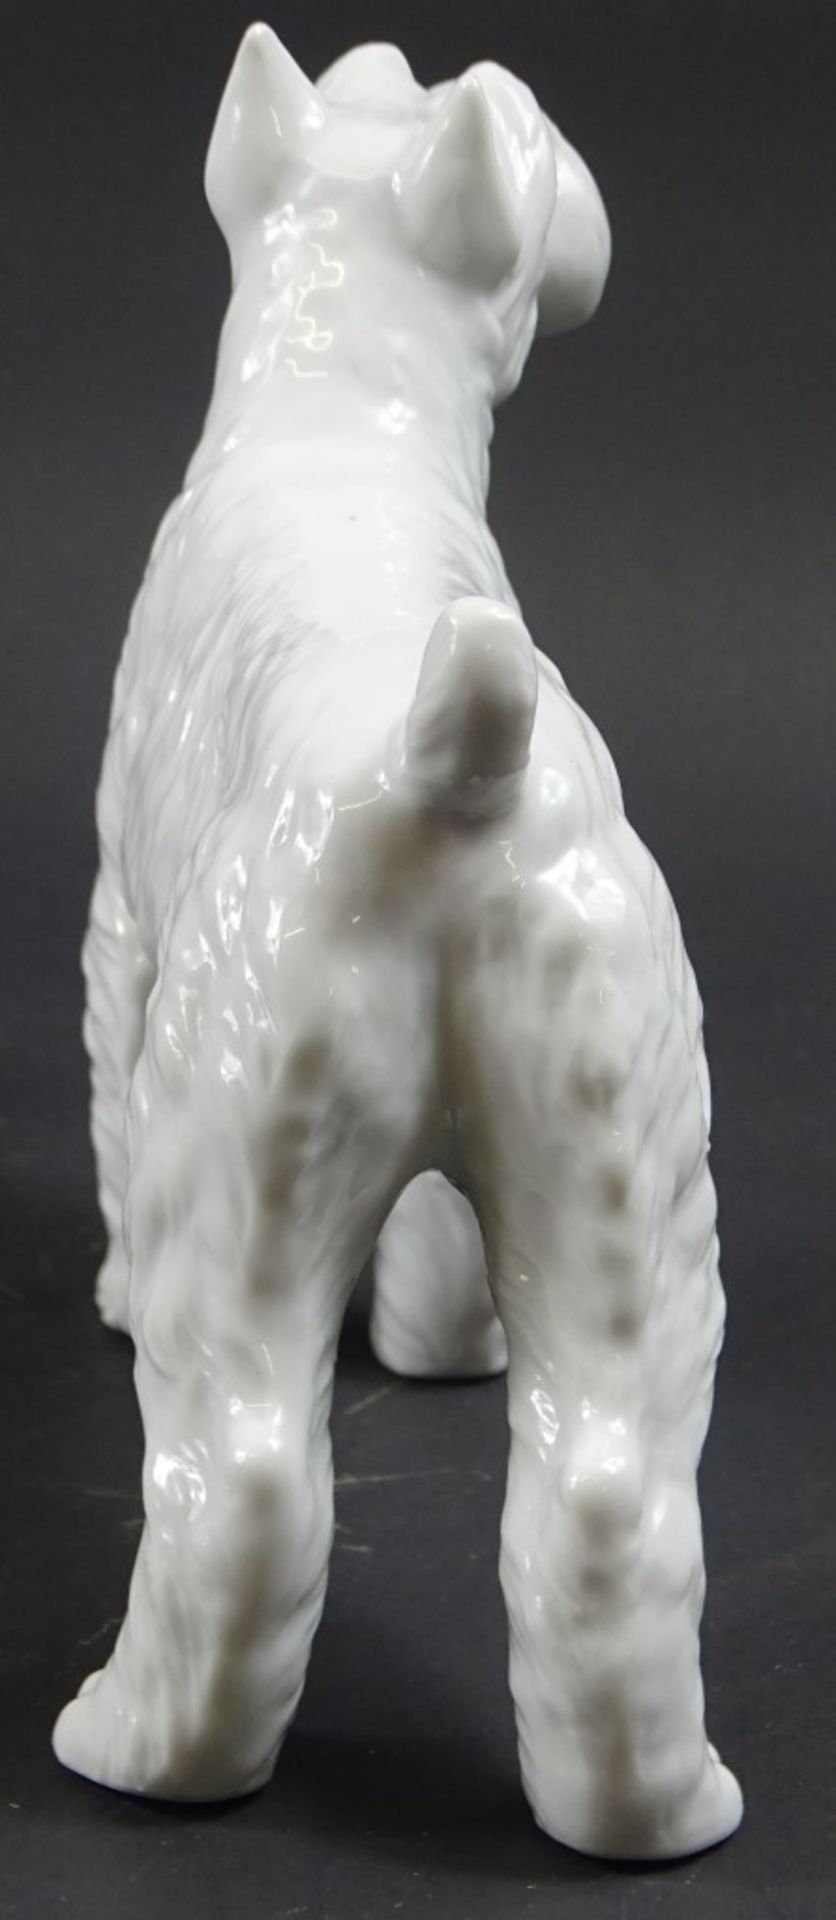 Terrierfigur, Weißporzellan, ungemarkt, H. 14,5, L. ca. 16 cm - Bild 3 aus 5